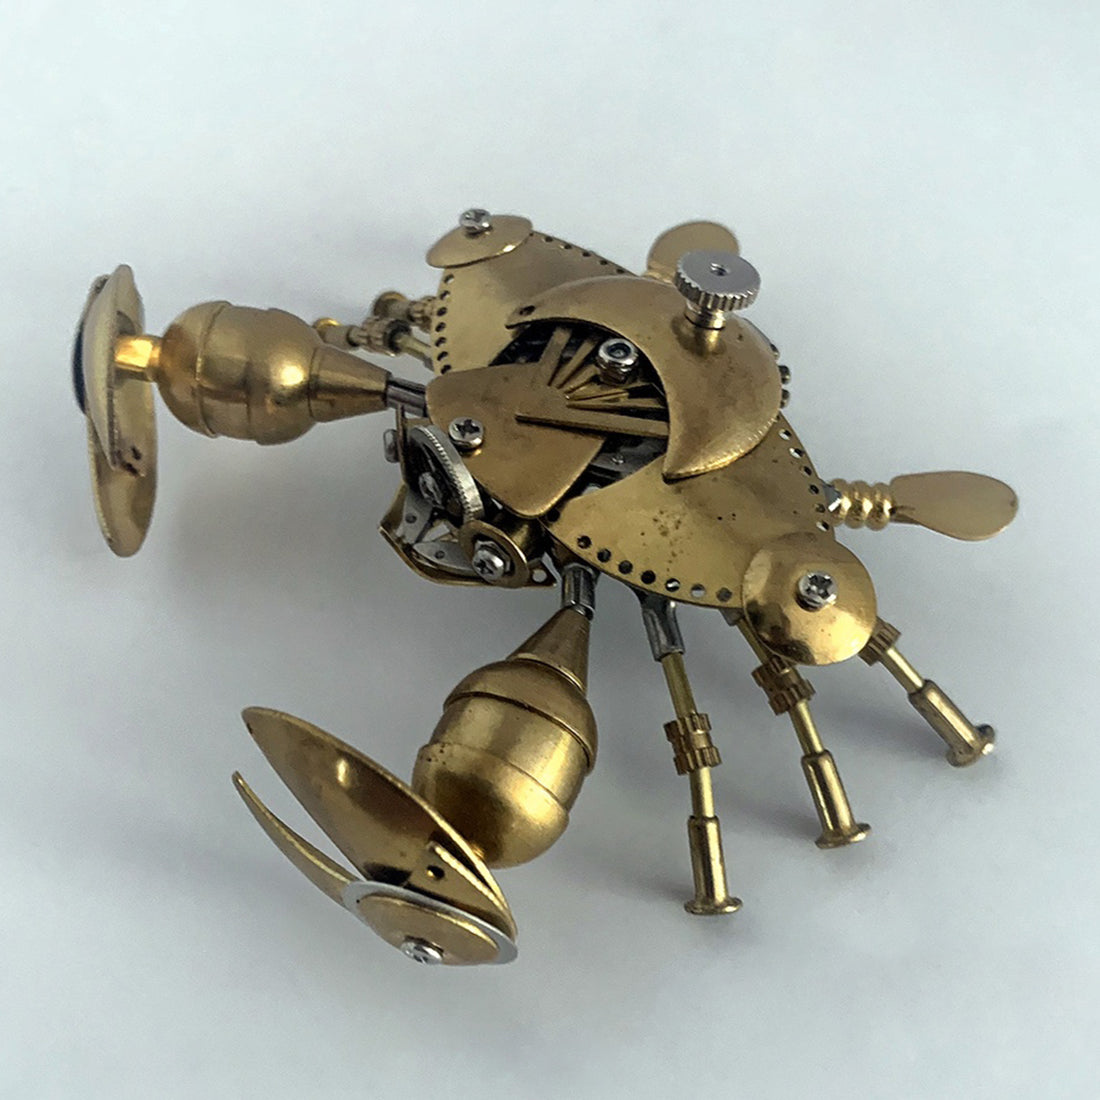 Crab Metal Steampunk Sculpture Model Handmade Assembled Crafts